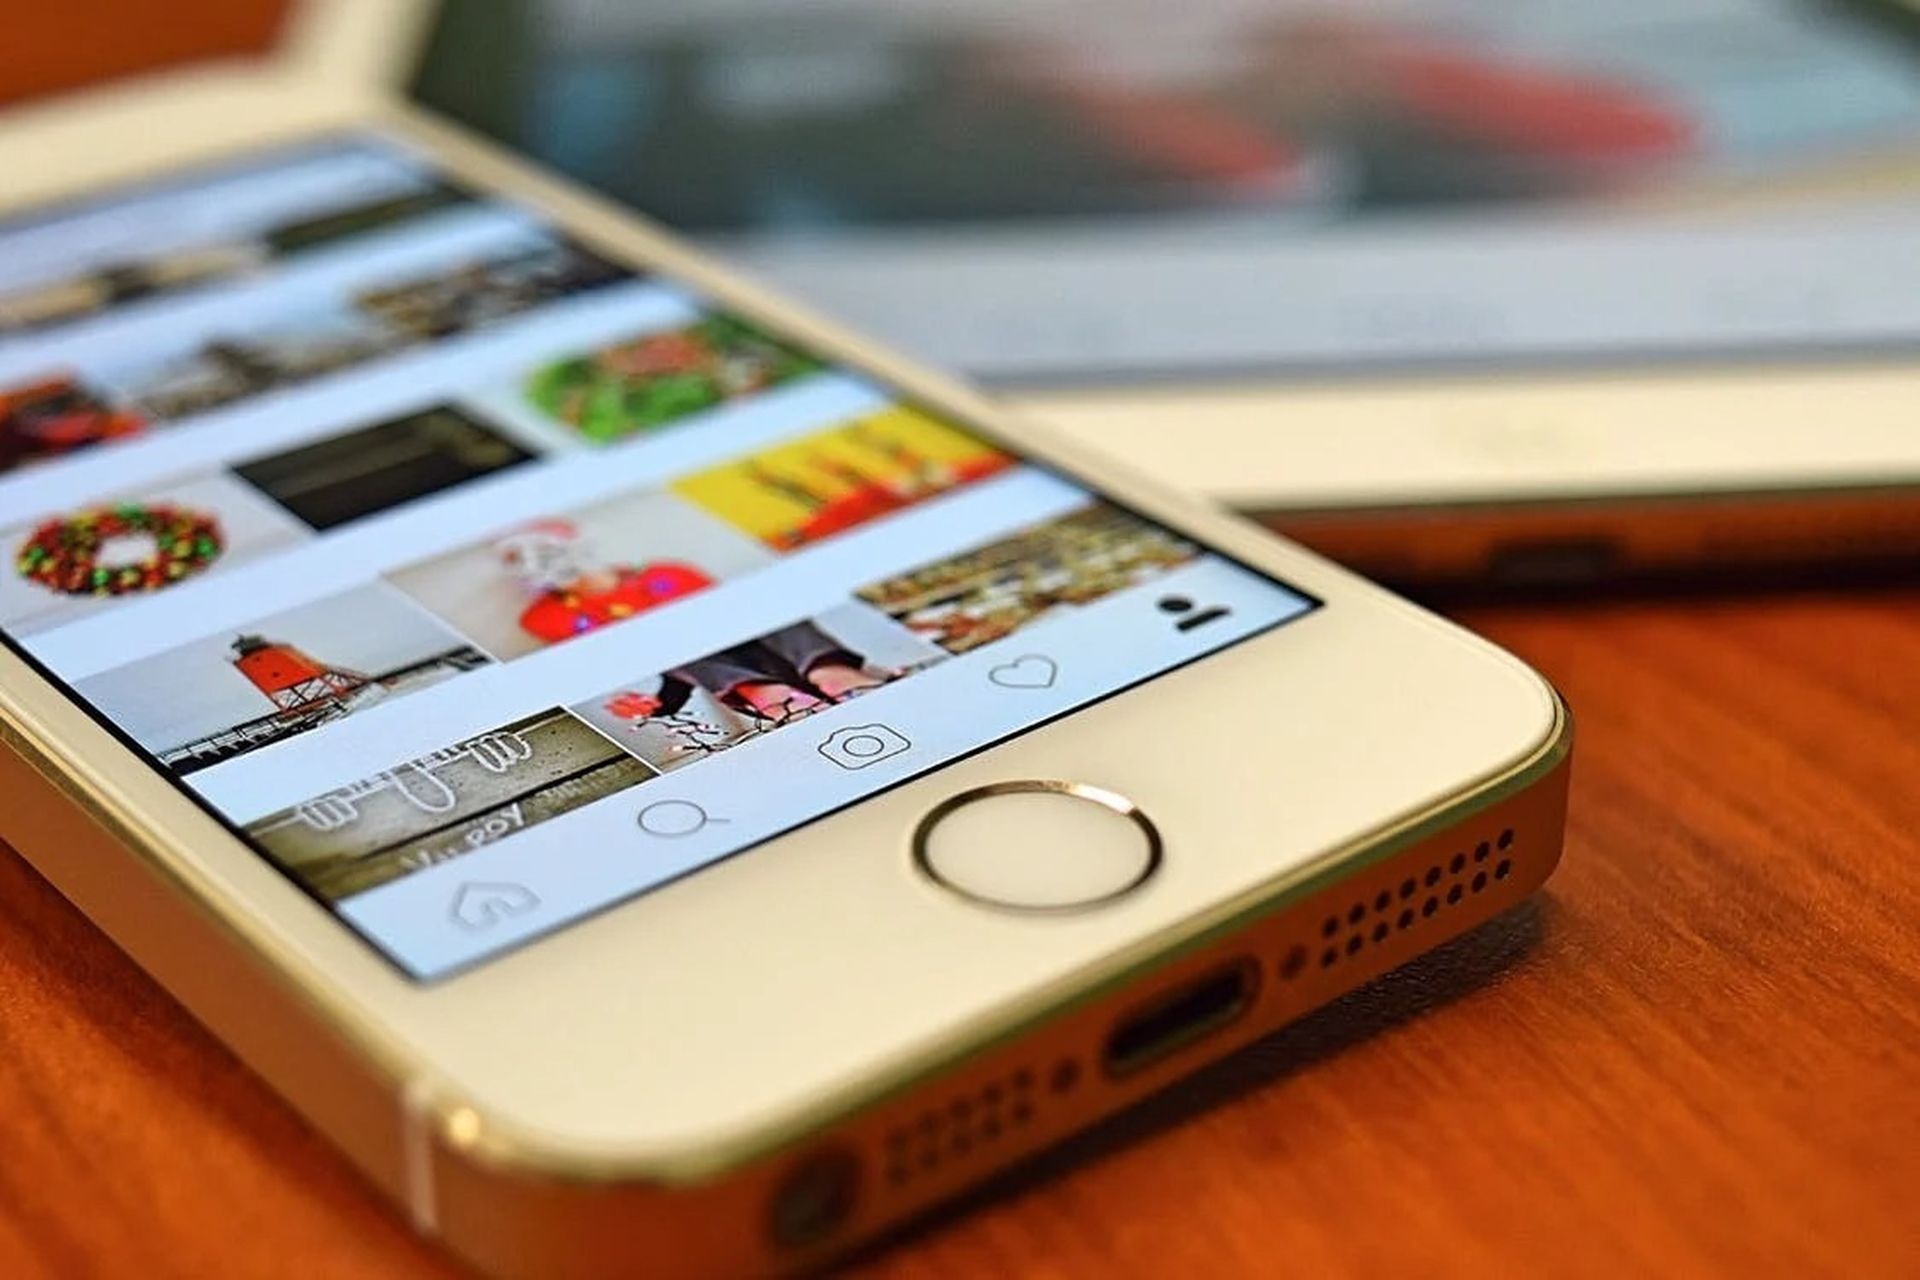 Esse novo recurso de zoom da foto do perfil do Instagram pode ser útil ao verificar rapidamente diferentes perfis.